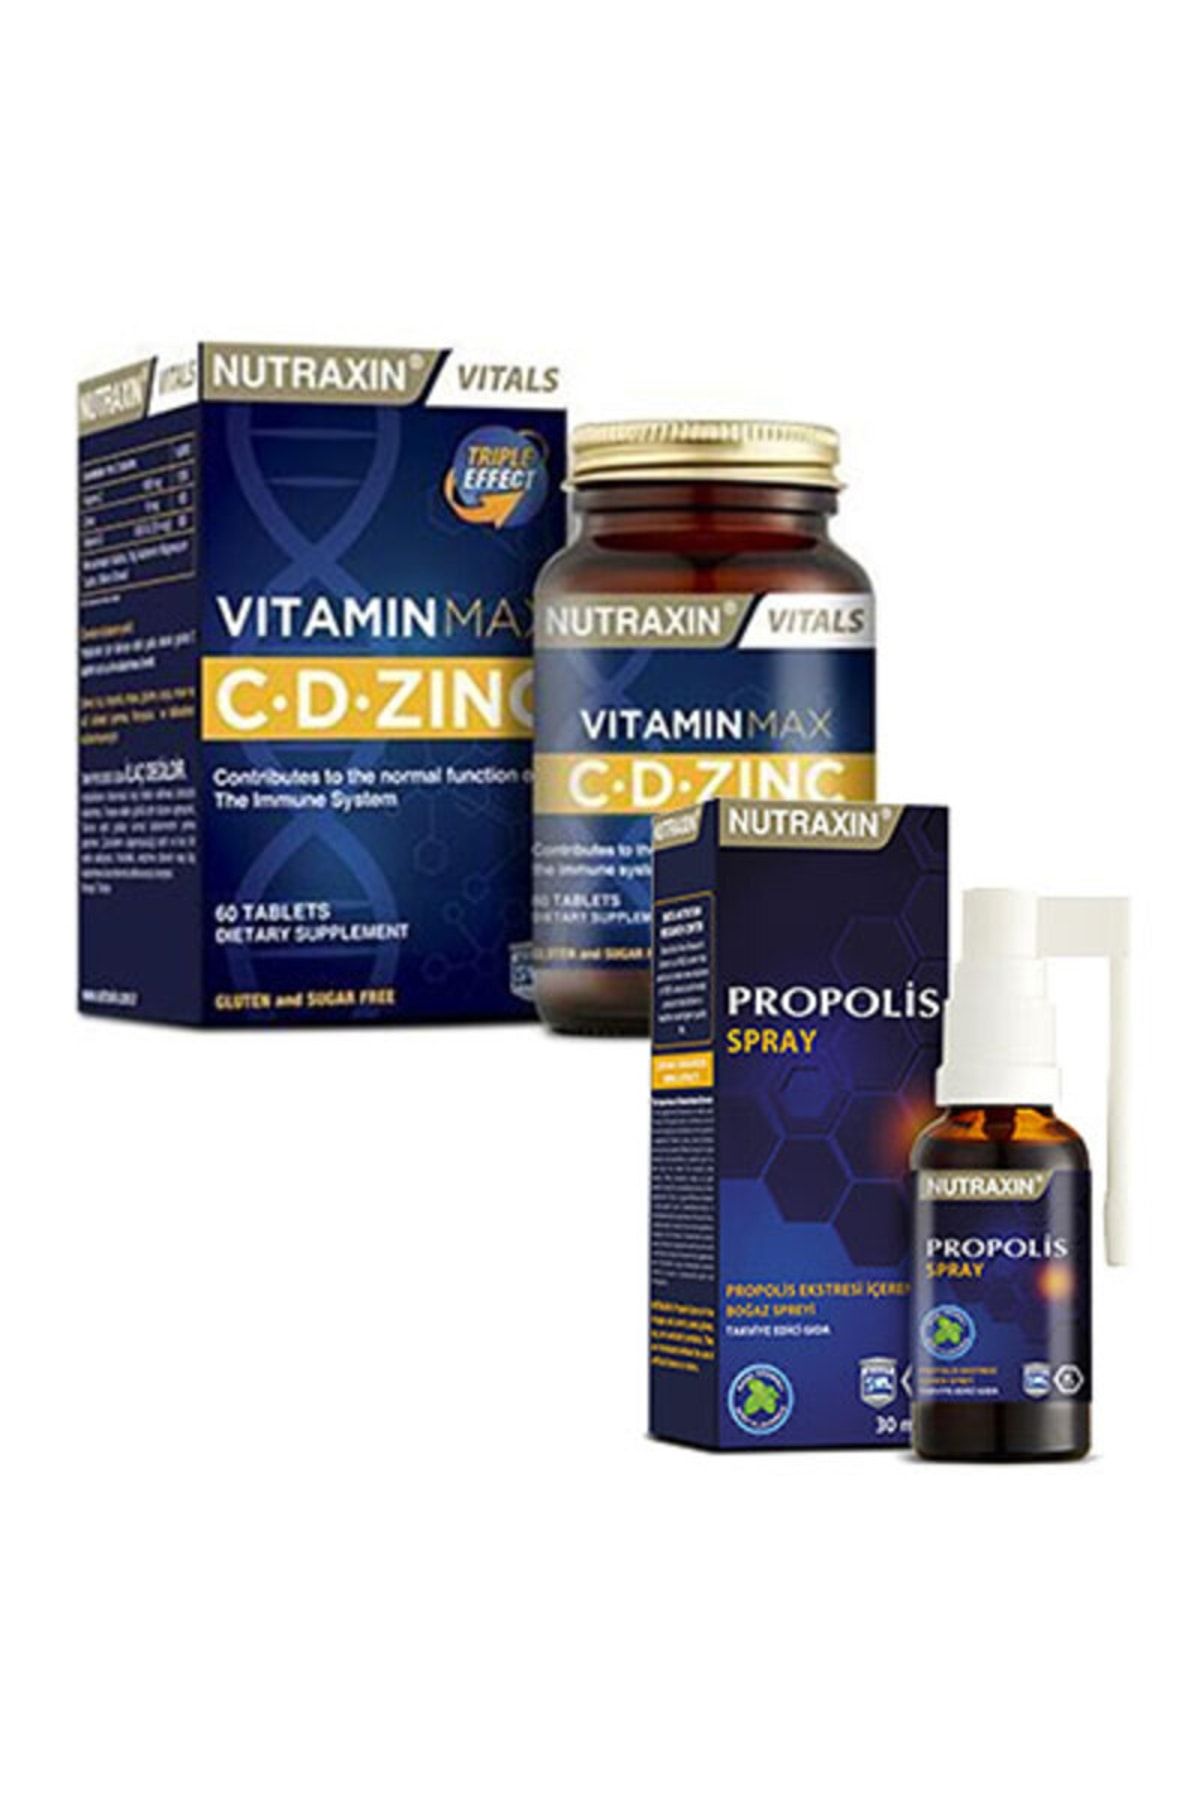 Nutraxin Propolis Sprey & Vitamin Max C D Zinc